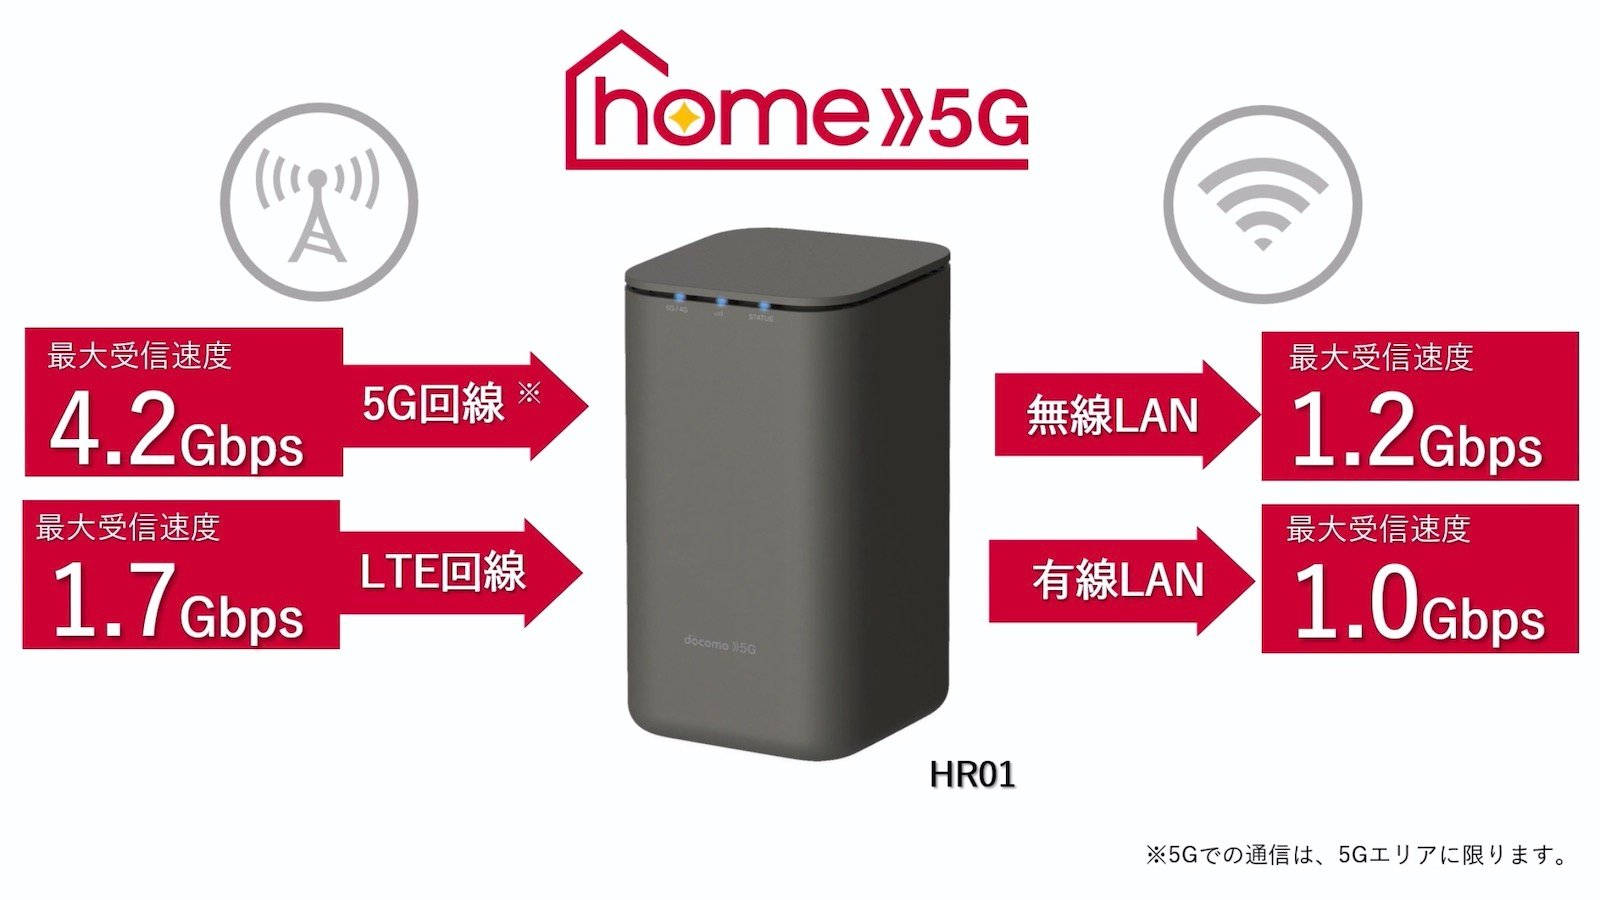 ドコモ、月額4,950円・使い放題の5Gホームルーター「home 5G」を8月下旬開始